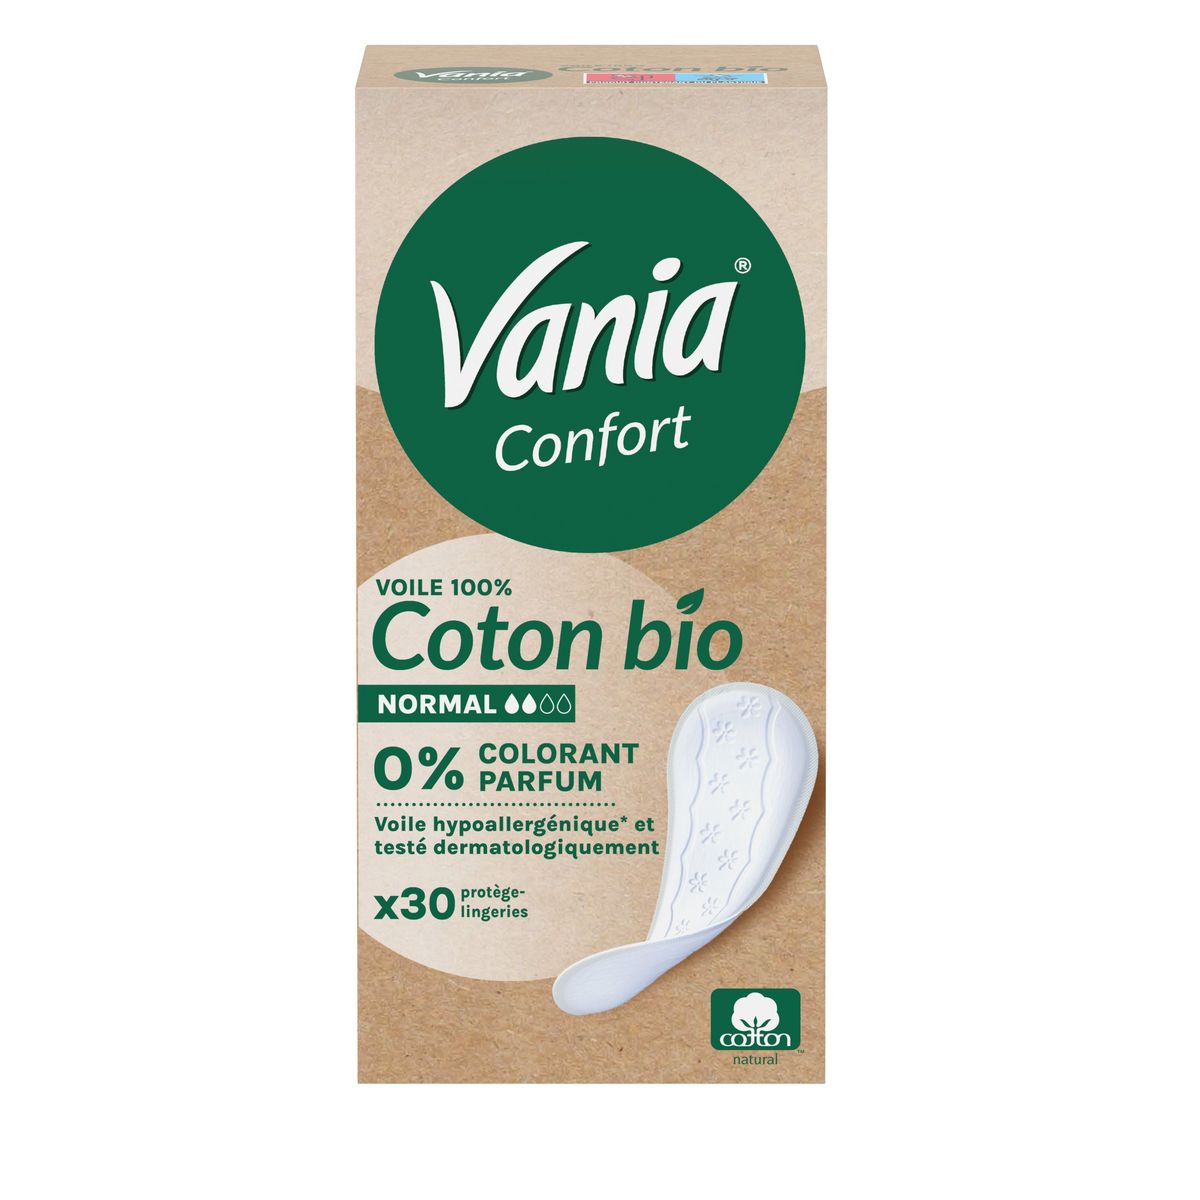 VANIA Confort protège-lingeries normal au coton bio 30 protège-lingeries